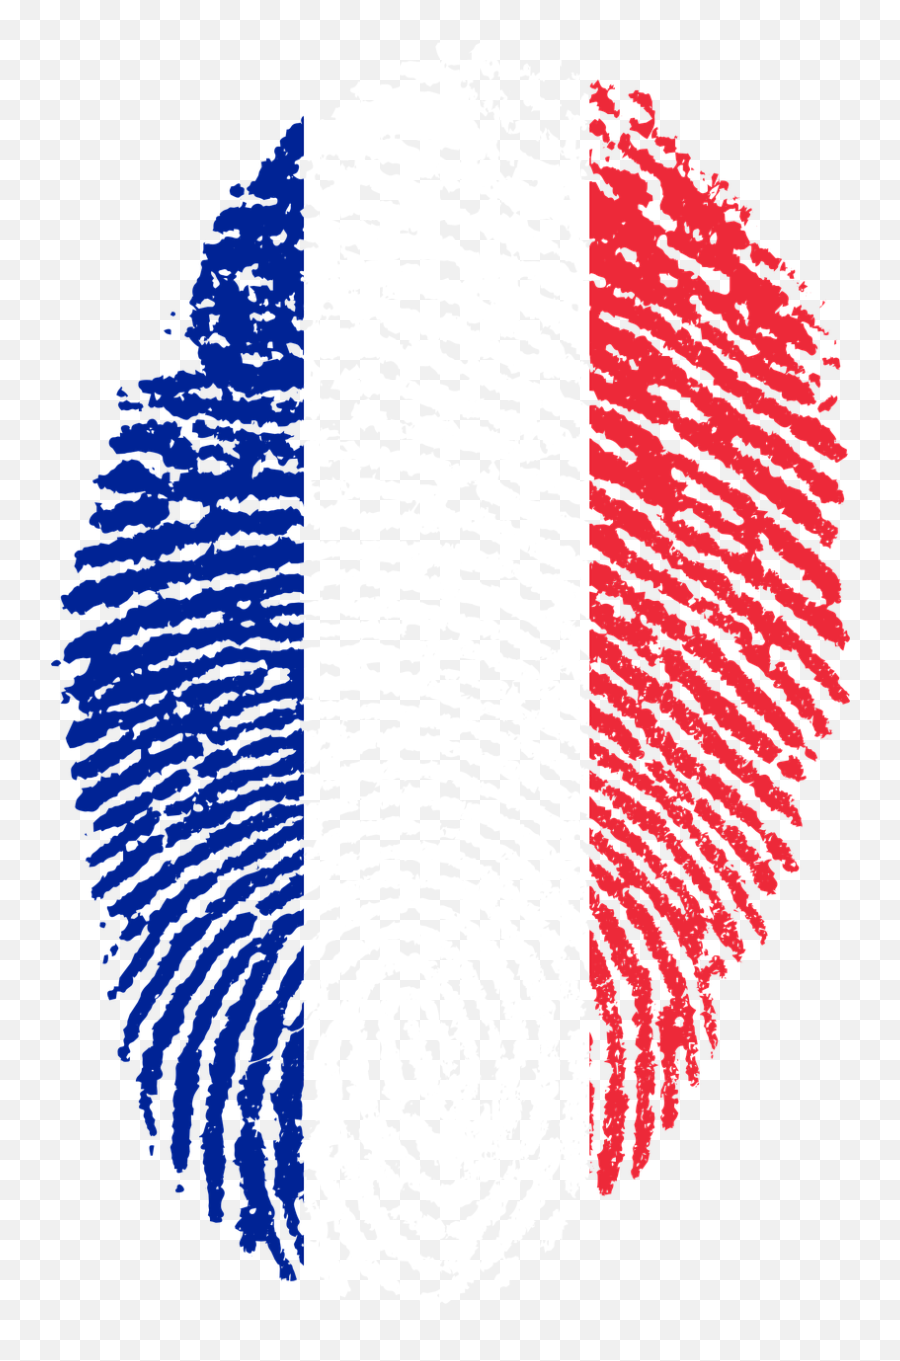 Free French Flag Transparent Background Download Free Clip - France Flag Fingerprint Emoji,Estonia Flag Emoji